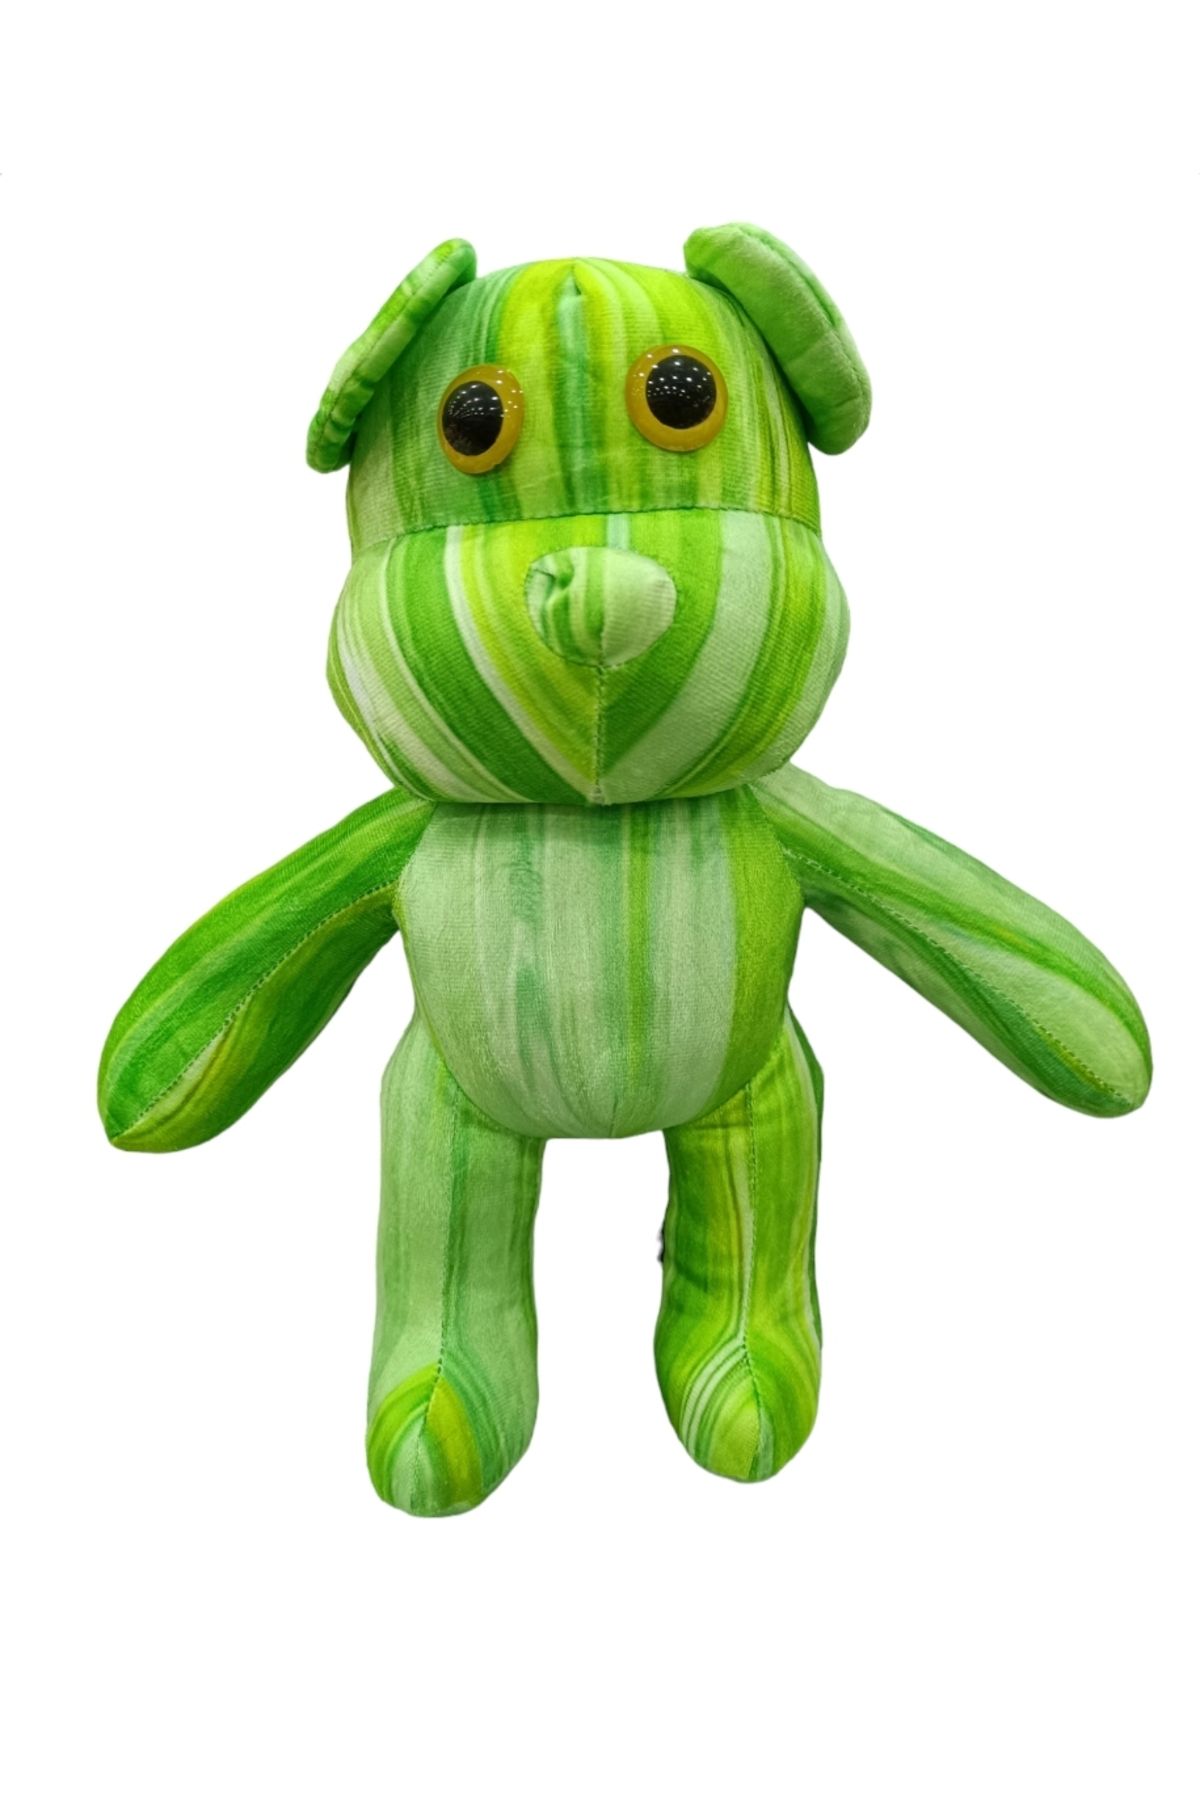 Happy Toys Pembe yeşil peluş boncuk gözlü oyuncak hediyelik 45cm